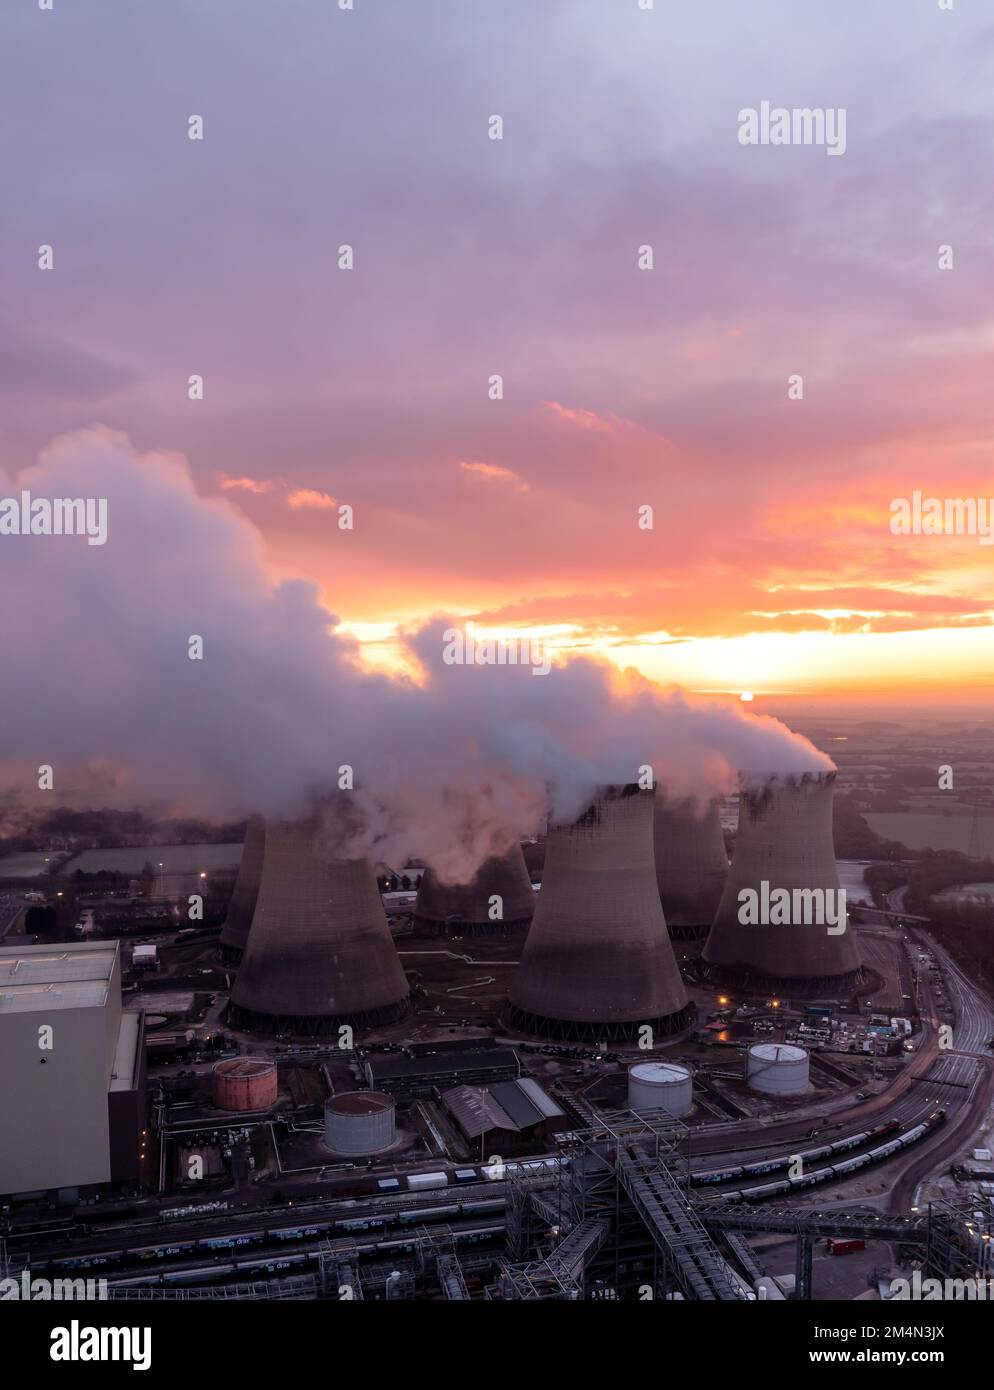 Luftaufnahme von schmutzigen Kohlekraftwerken, die die Atmosphäre bei Sonnenuntergang mit Kohlendioxidemissionen verschmutzen Stockfoto